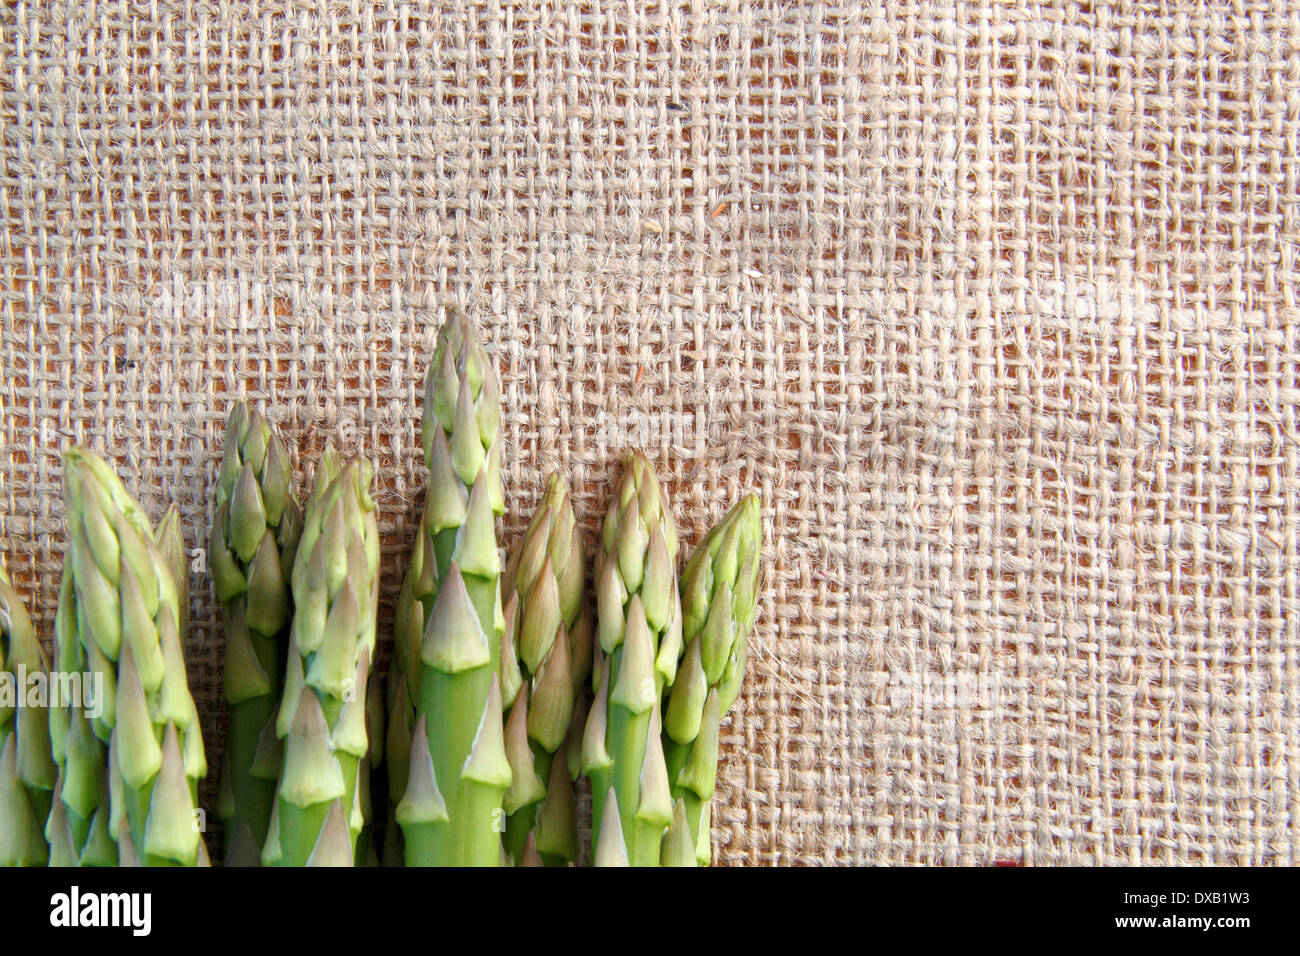 Frische grüne Spargelspitzen (Asparagus officinalis) gegen hessische Hintergrund Tuch, UK-wih Kopie Raum Stockfoto